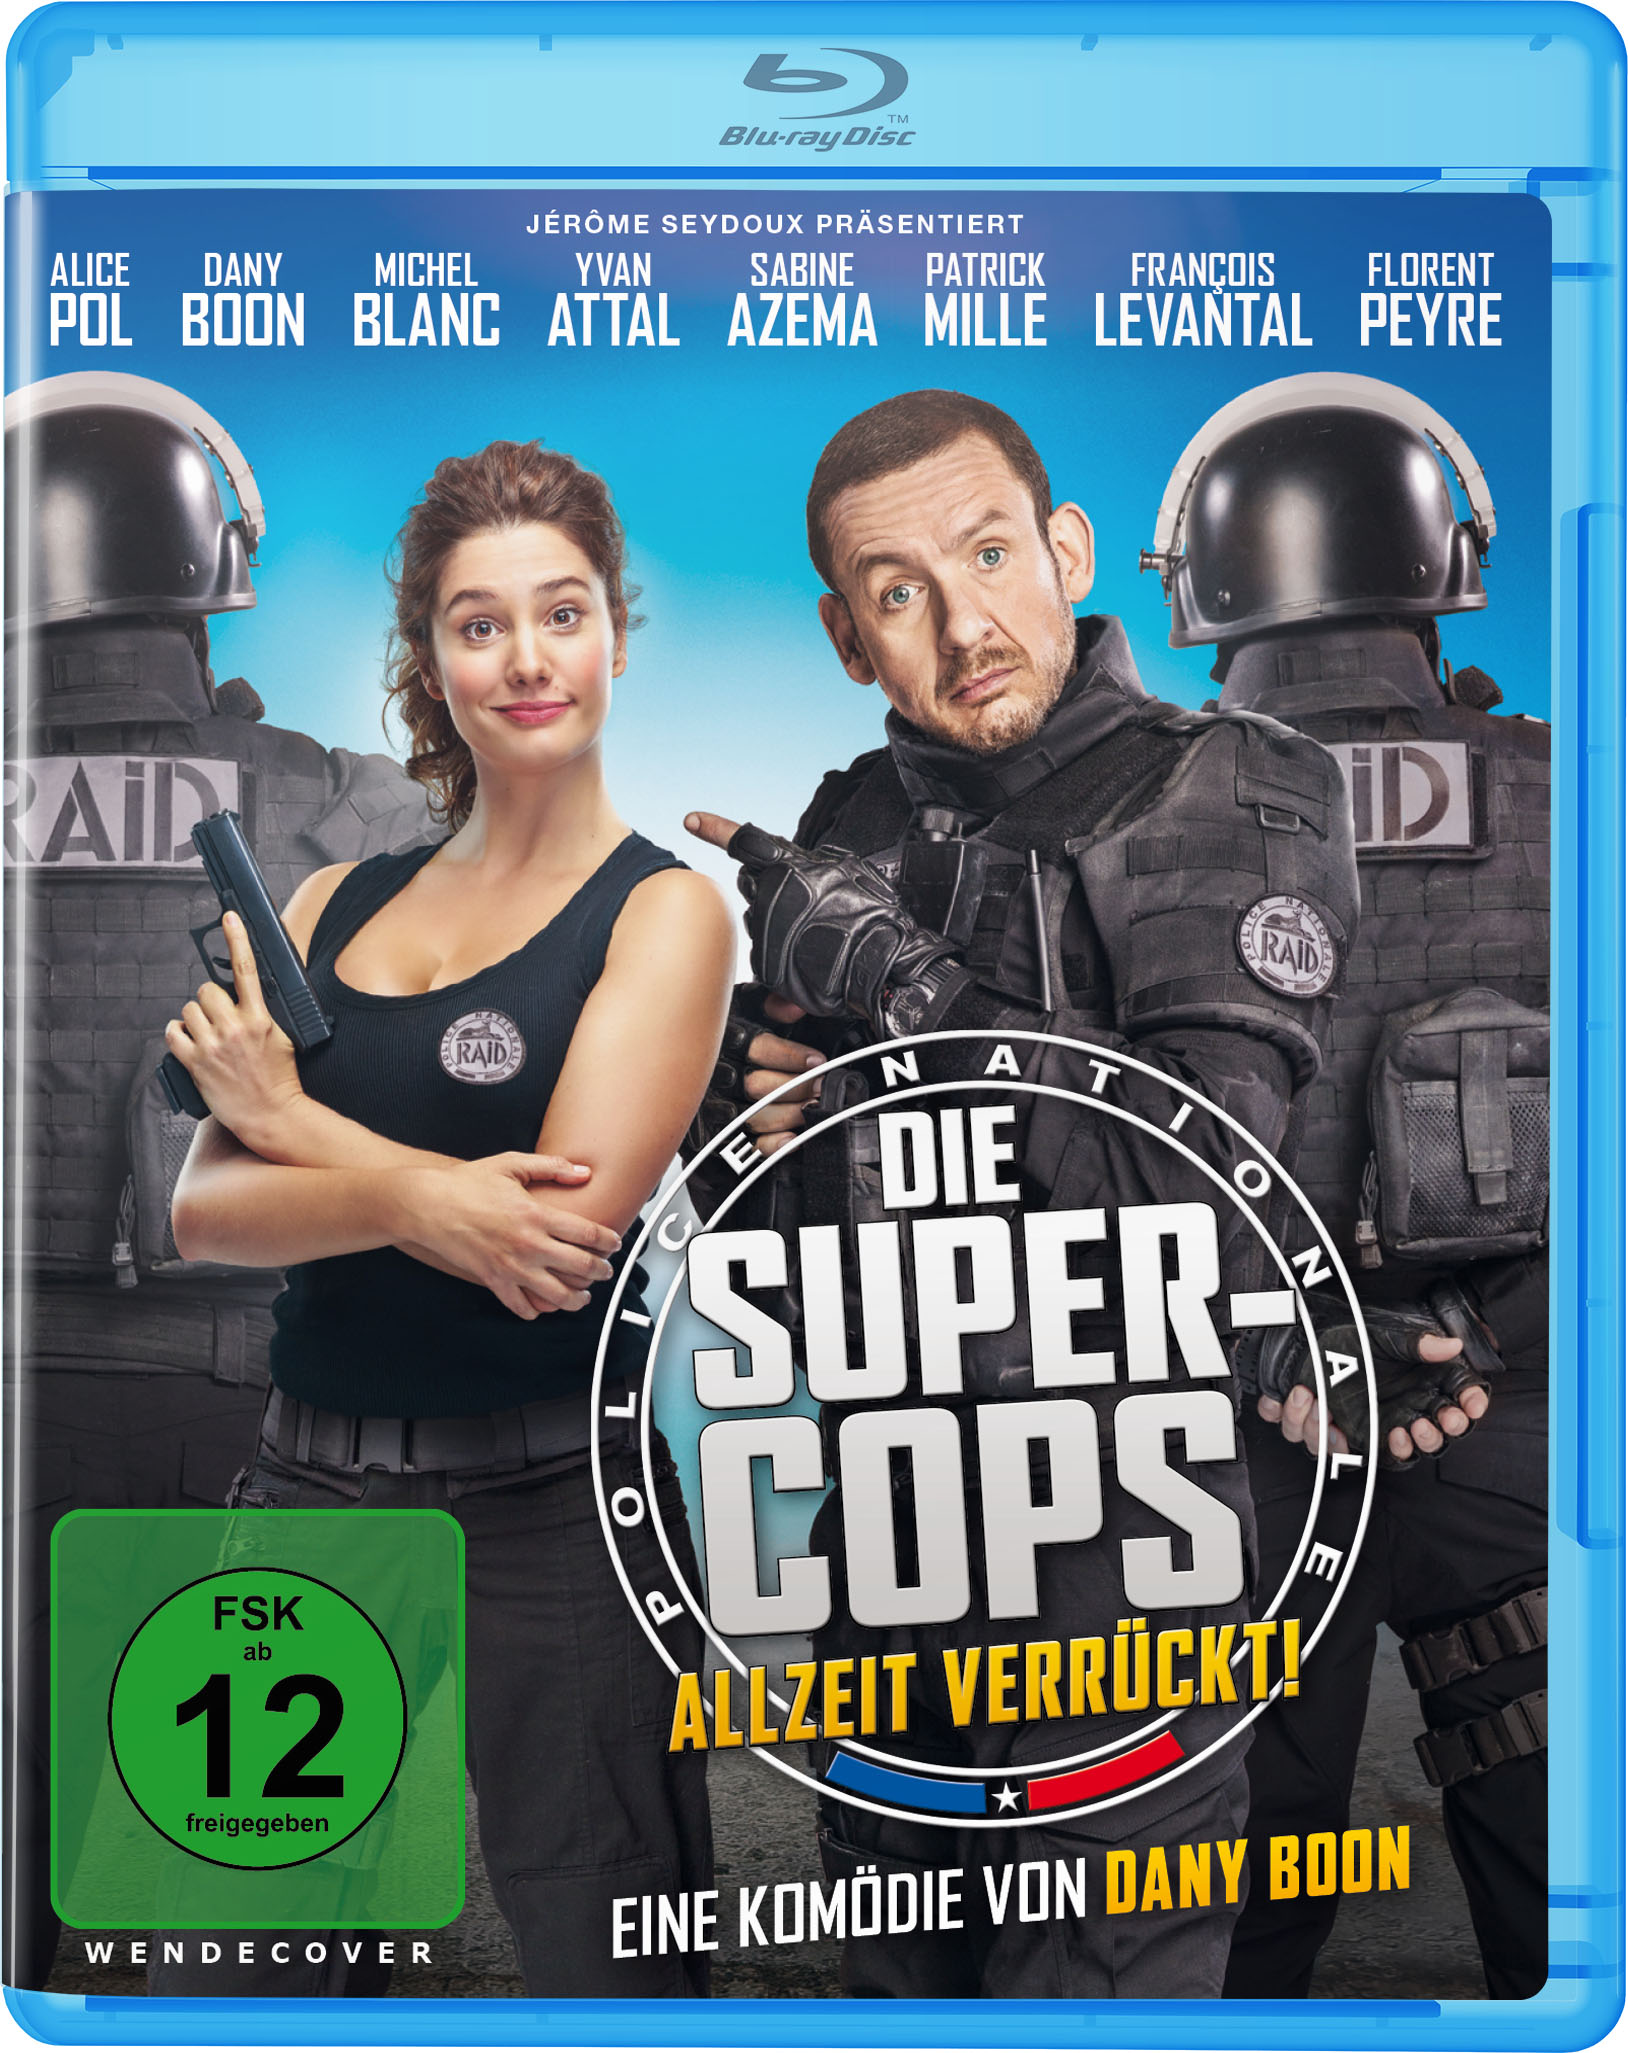 Die Super-Cops Verrückt! - Blu-ray Allzeit